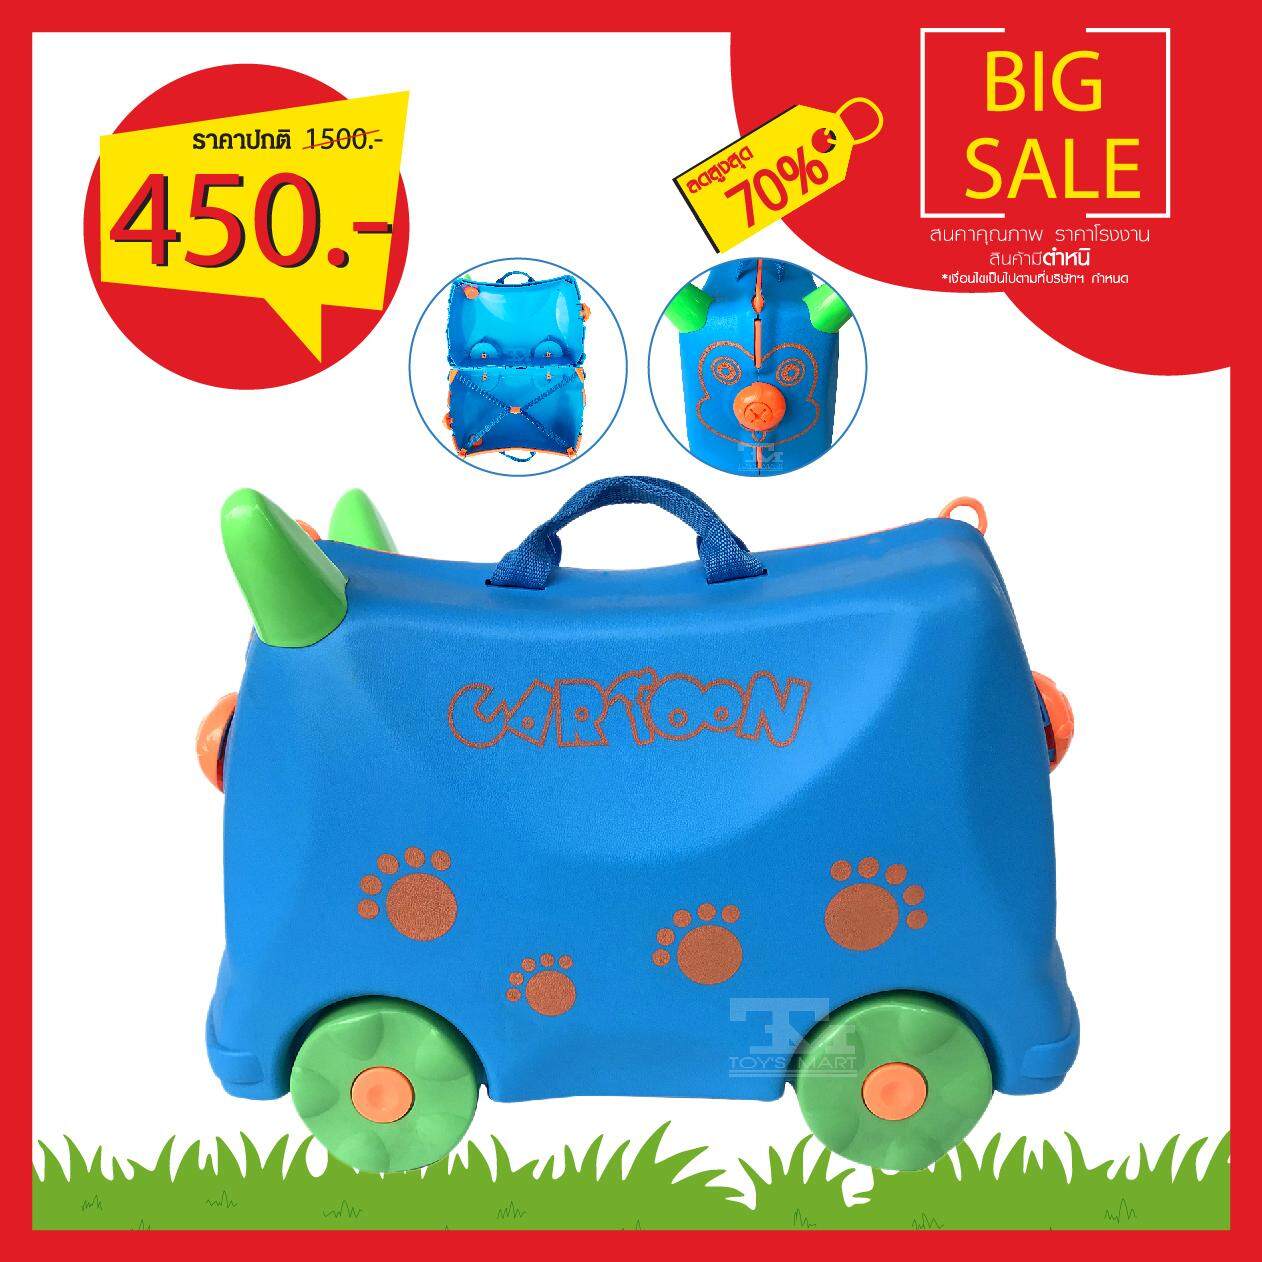 กระเป๋าเดินทางสำหรับเด็ก ลายลิงสีฟ้า สินค้ามีตำหนิ ราคาโรงงาน